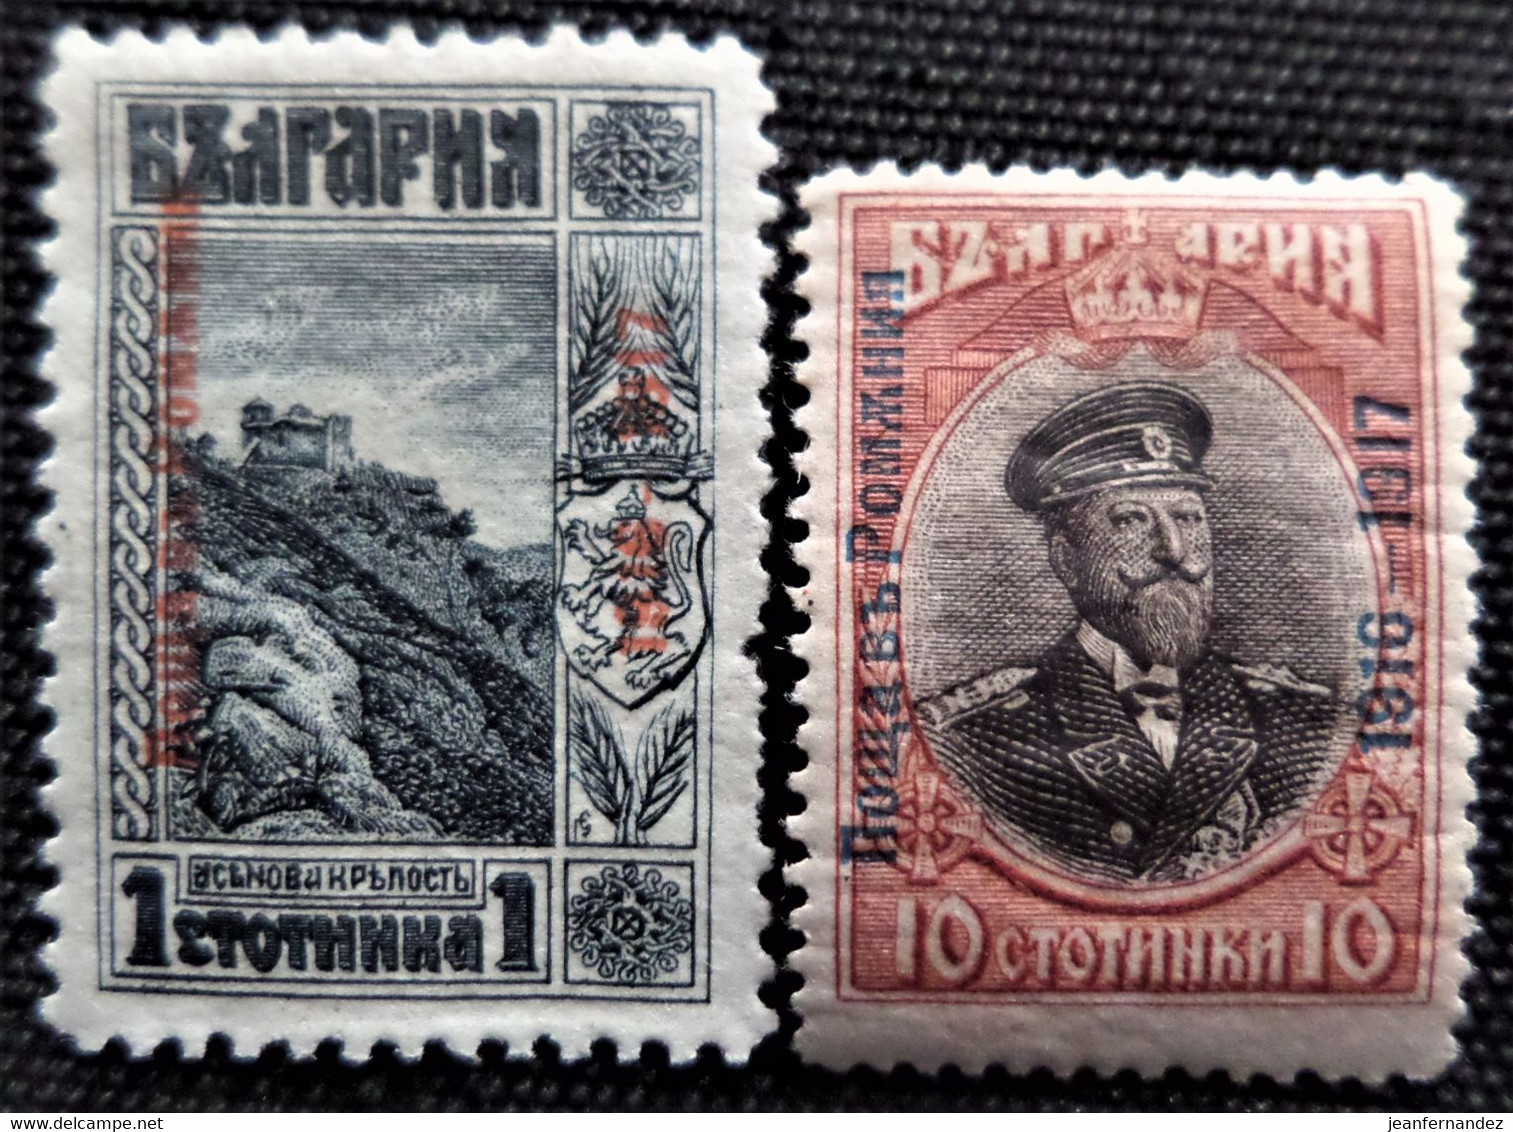 Timbre De Dobrudja ( Bulgarie ) 1916 -1917 Bulgarian Postage Stamps Overprinted Stampworld N° 1 Et 3 MNH - Abarten Und Kuriositäten